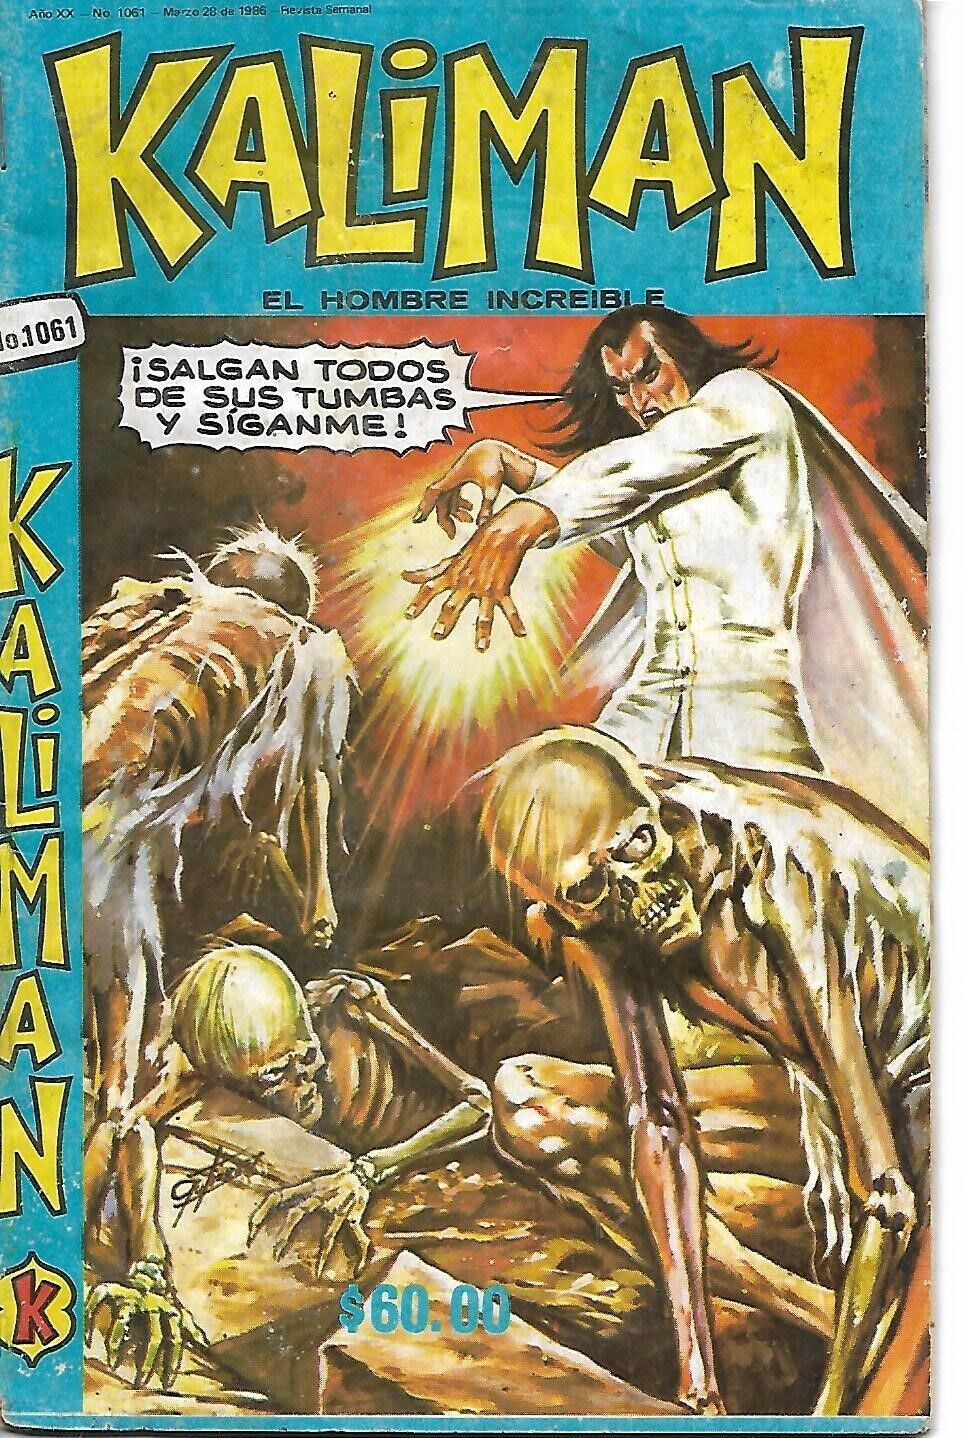 Kaliman El Hombre Increible #1061 - Marzo 28, 1986